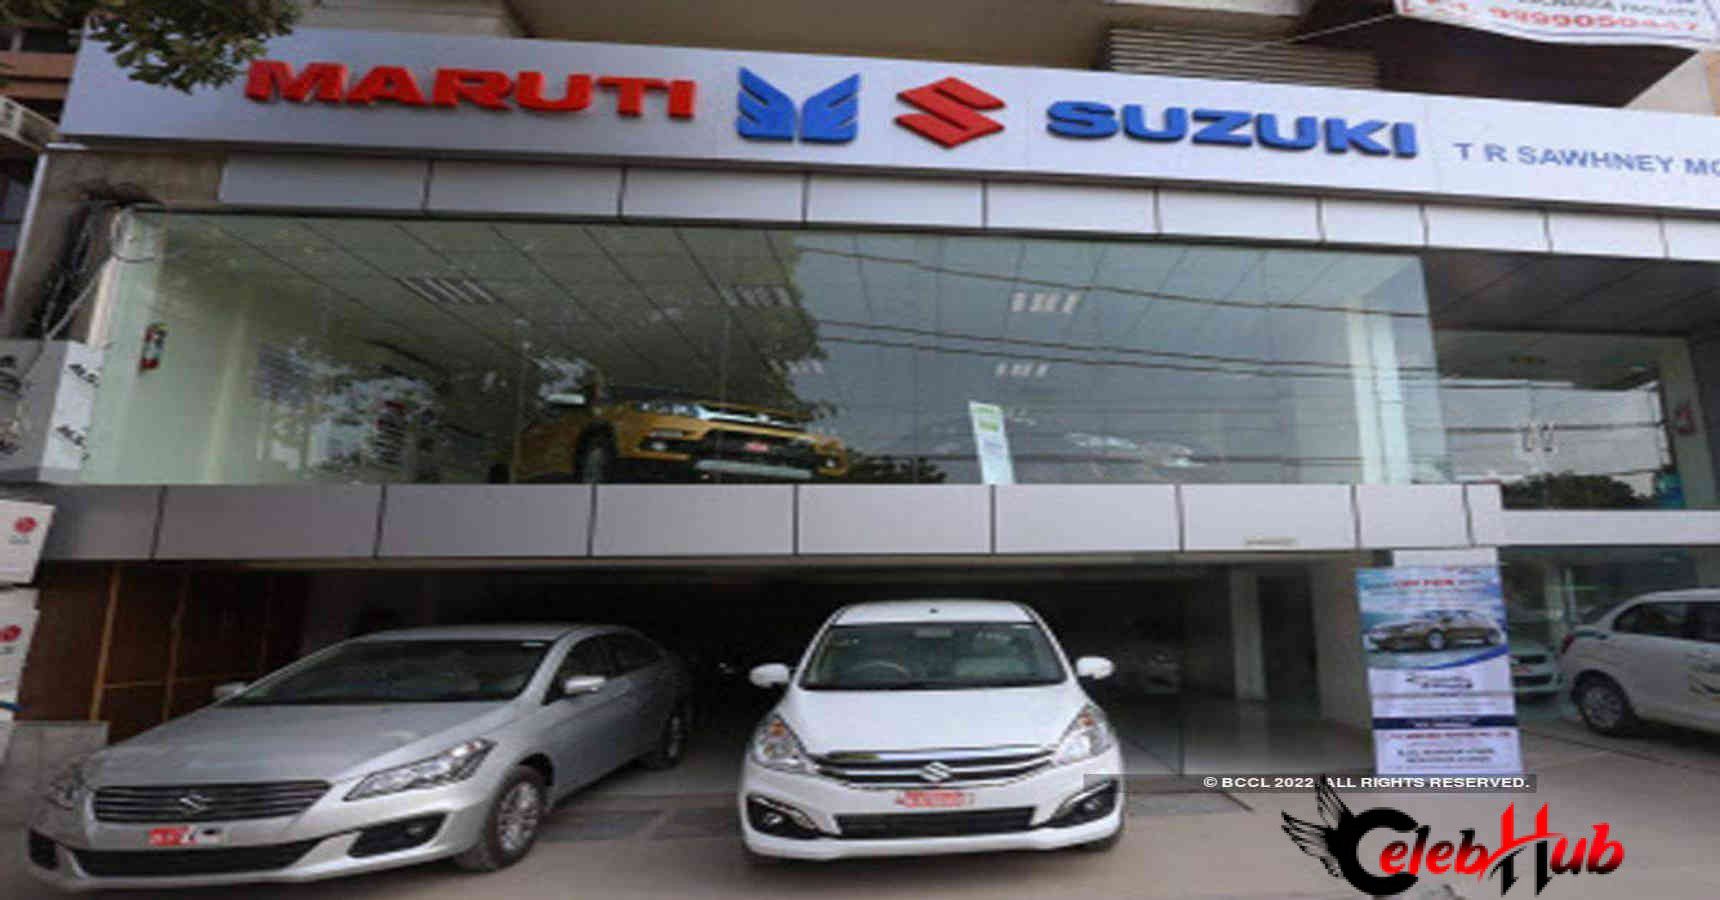 Maruti Suzuki India Limited 